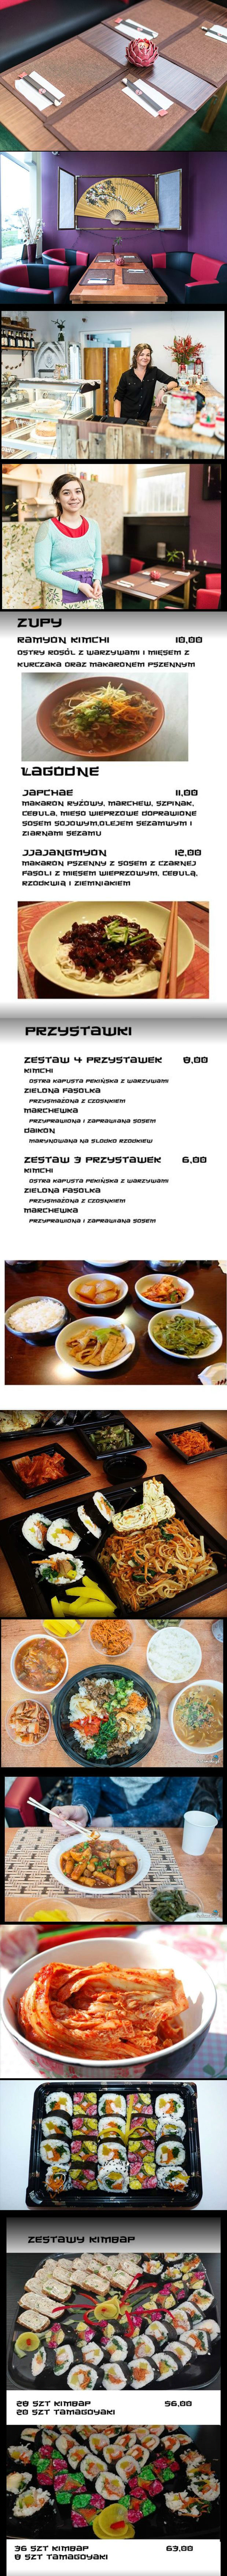 폴란드인이 운영하는 한국식당